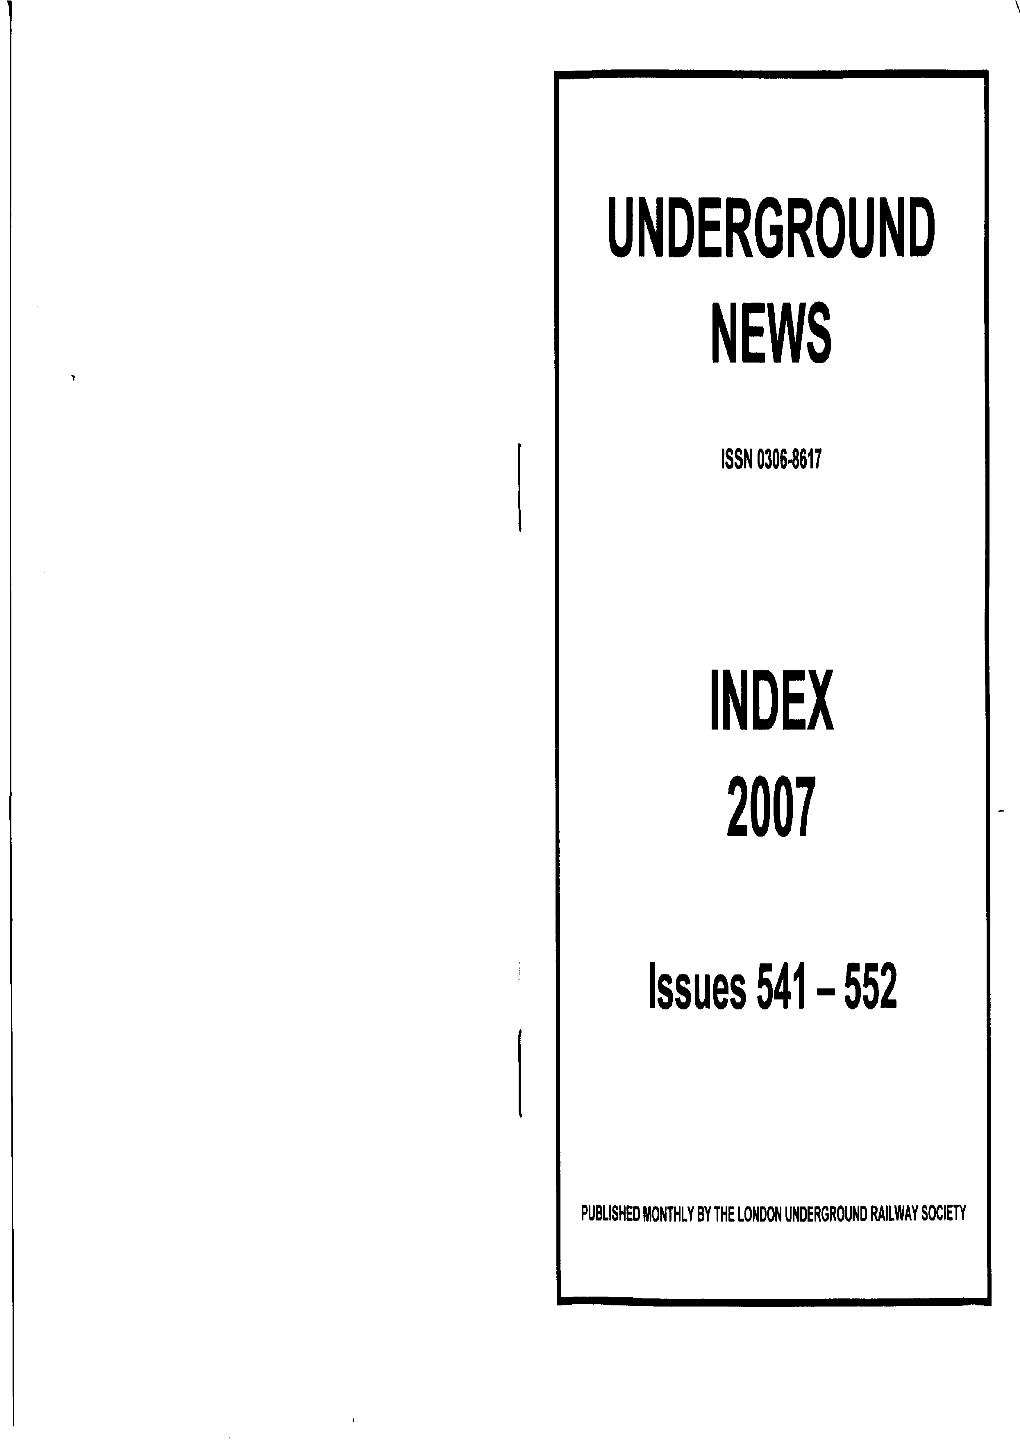 Underground News Index 2007